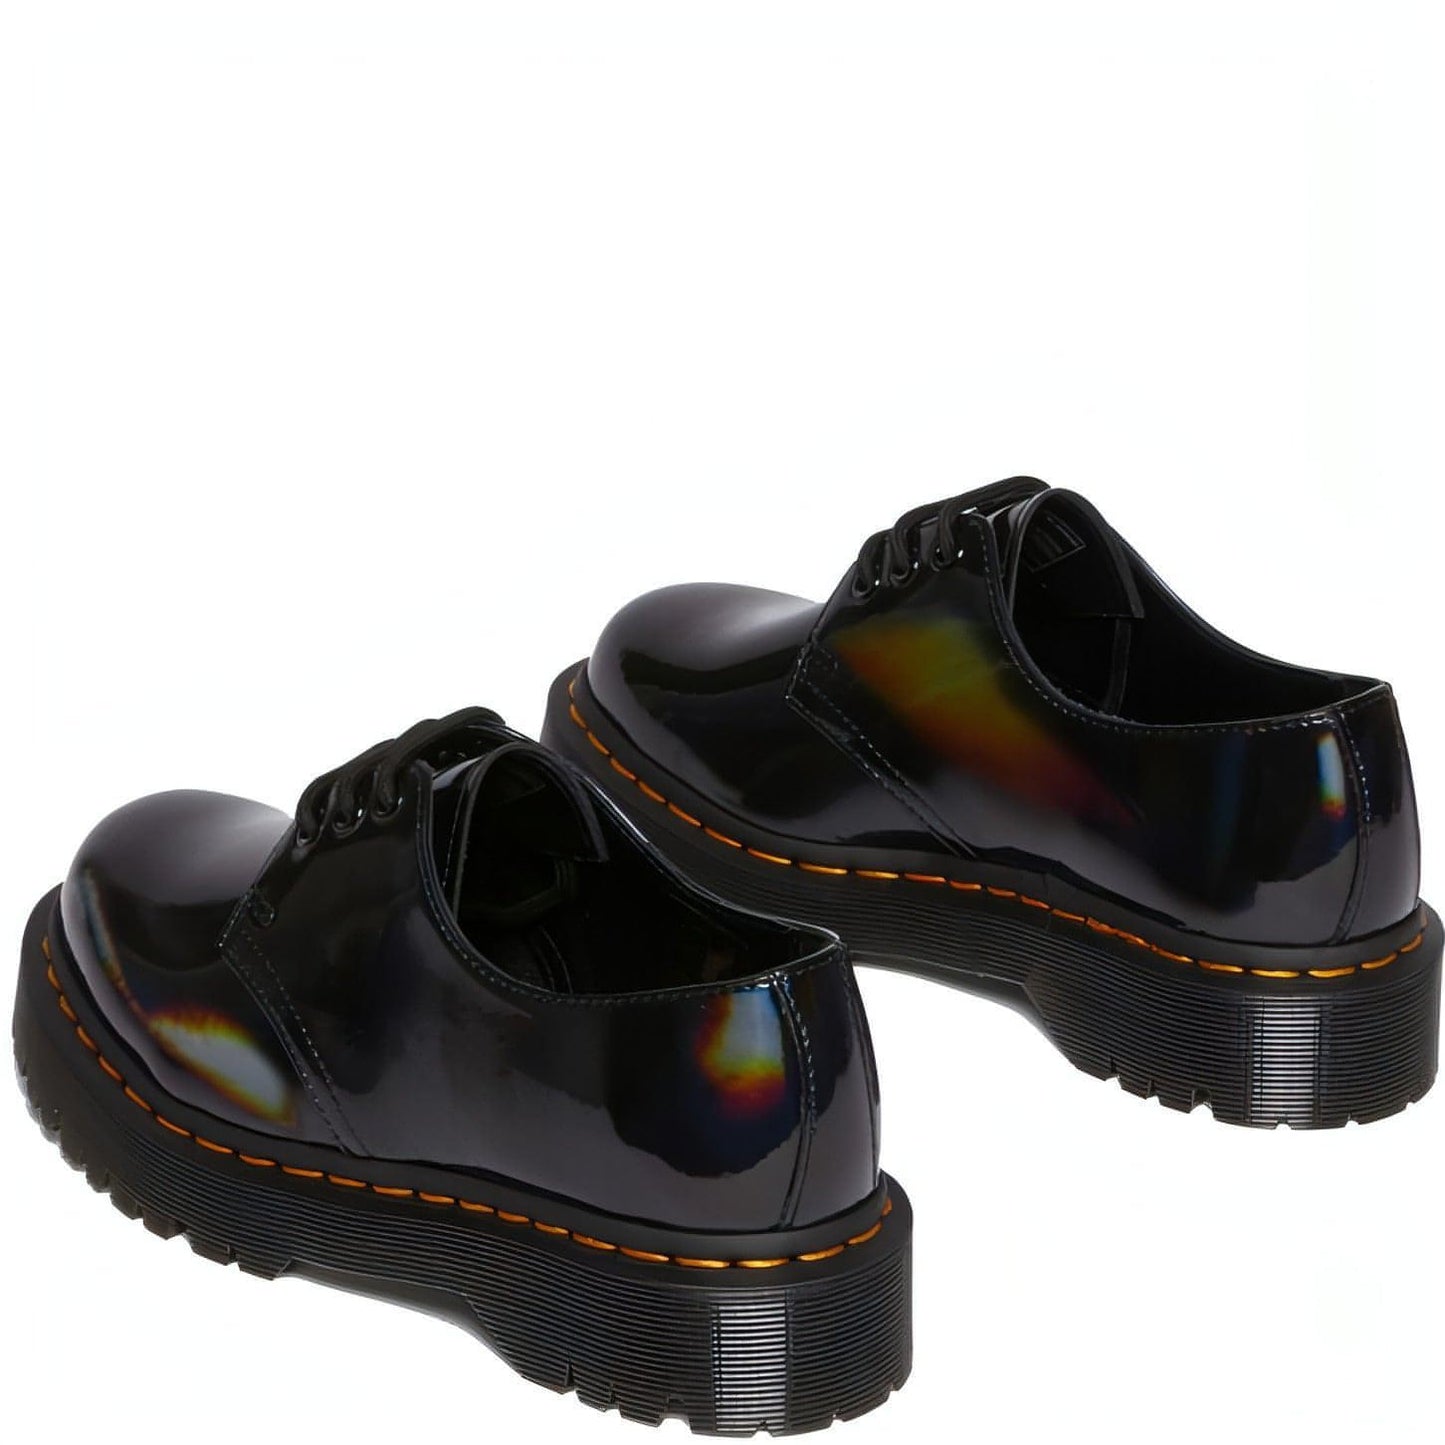 DR. MARTENS moteriški juodi batai 1461 bex rainbow formal